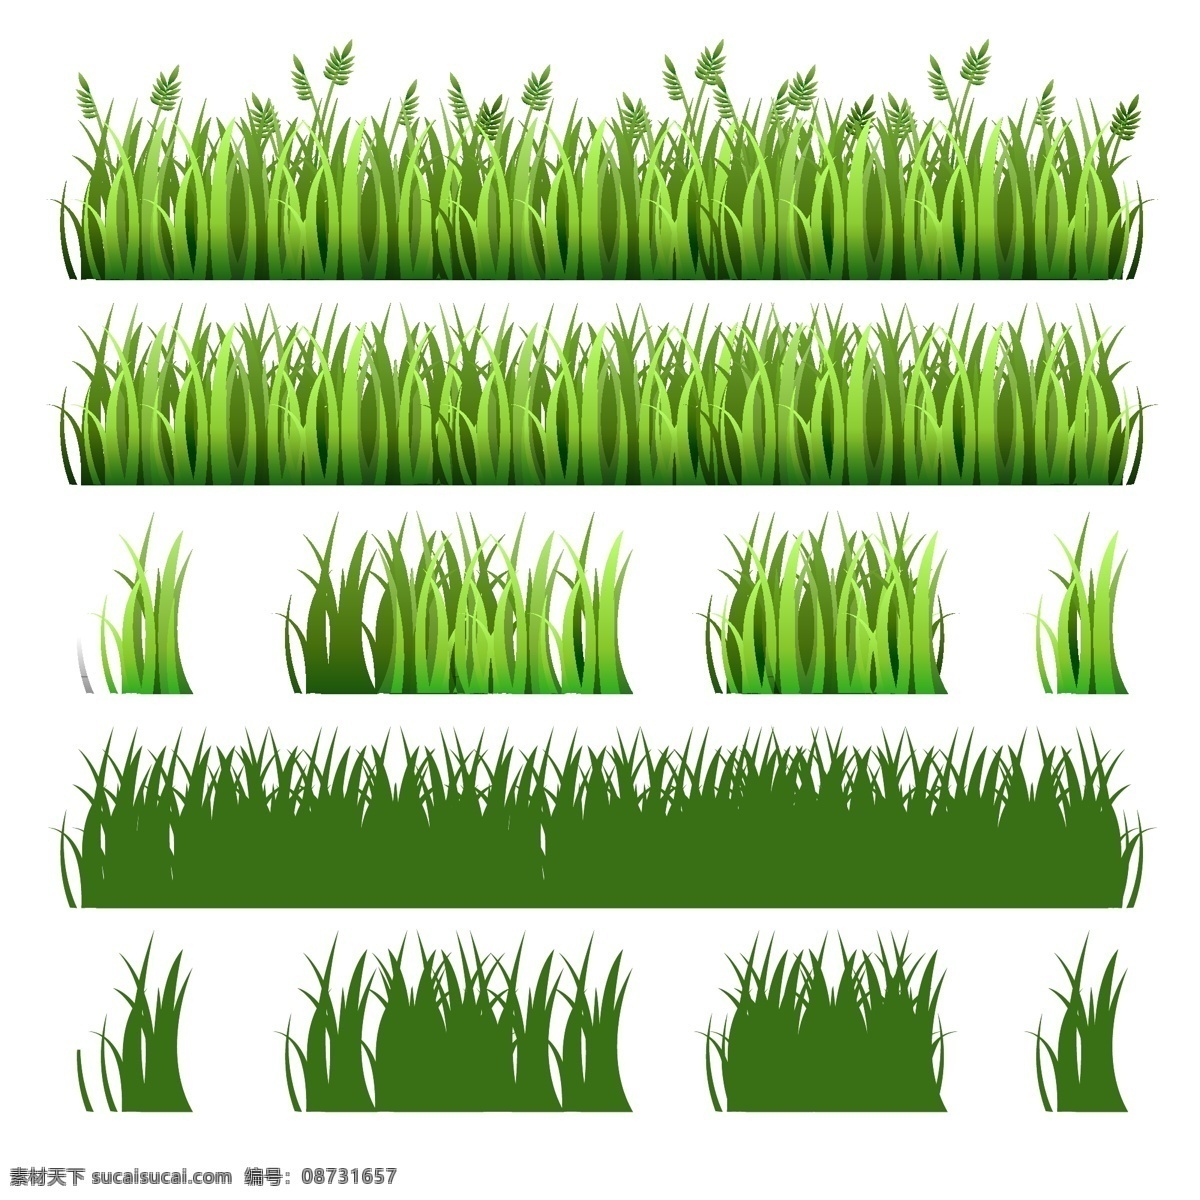 绿色草丛矢量 植物 草丛 草地 剪影 小麦 矢量图 ai格式 生物世界 花草